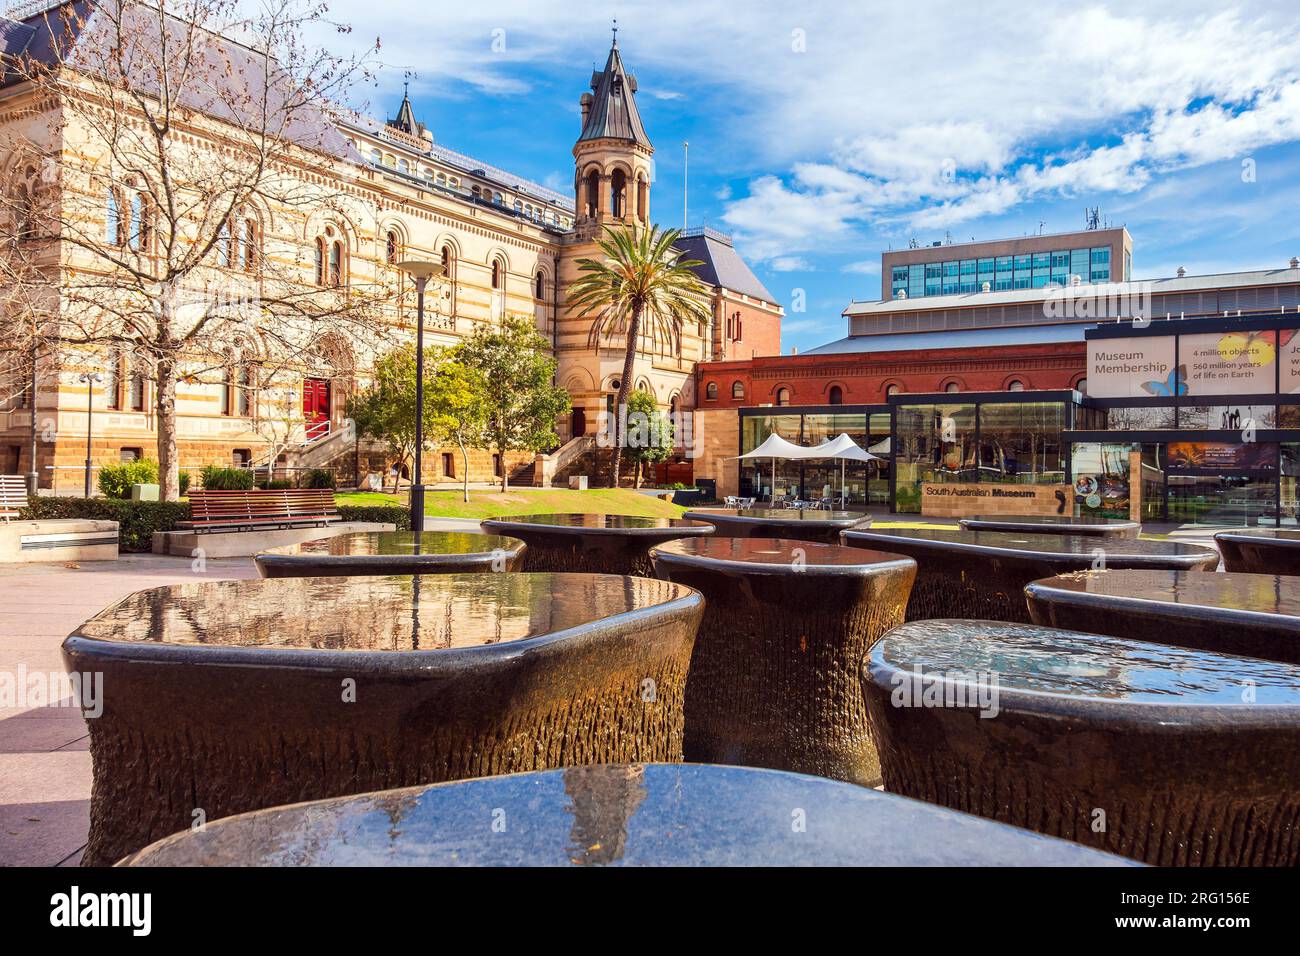 Adelaide, Australien - 2. September 2019: Südaustralisches Museum mit berühmten Brunnen an der Vorderseite, von der North Terrace im zentralen Geschäftsviertel von Adelaide aus gesehen Stockfoto